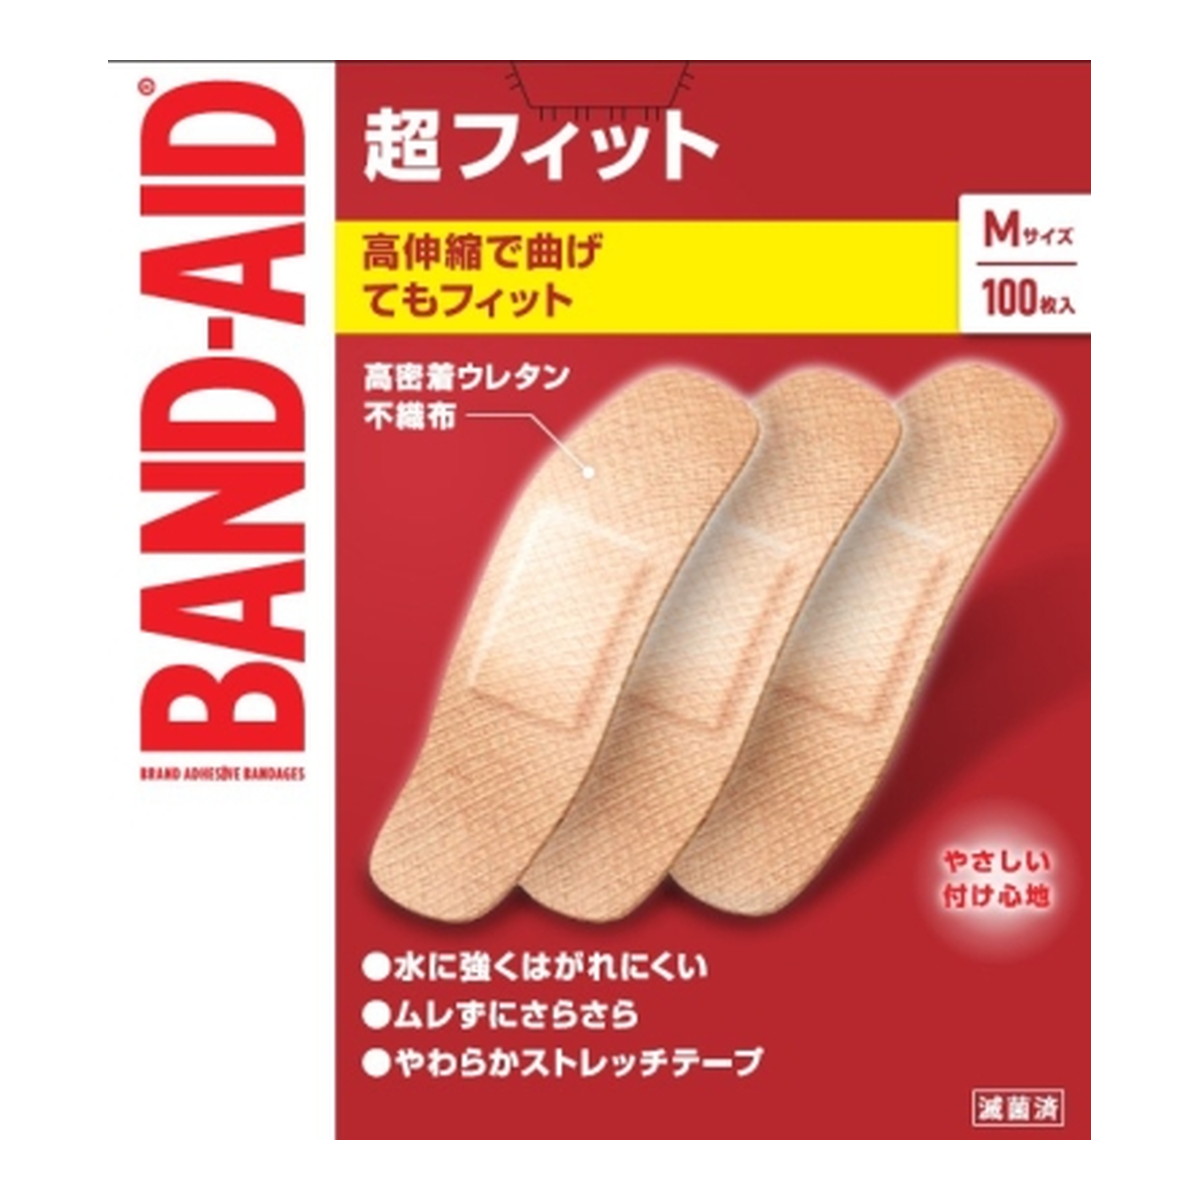 BANDーAID Kenvue バンドエイド 超フィット Mサイズ 100枚入×24個 絆創膏の商品画像